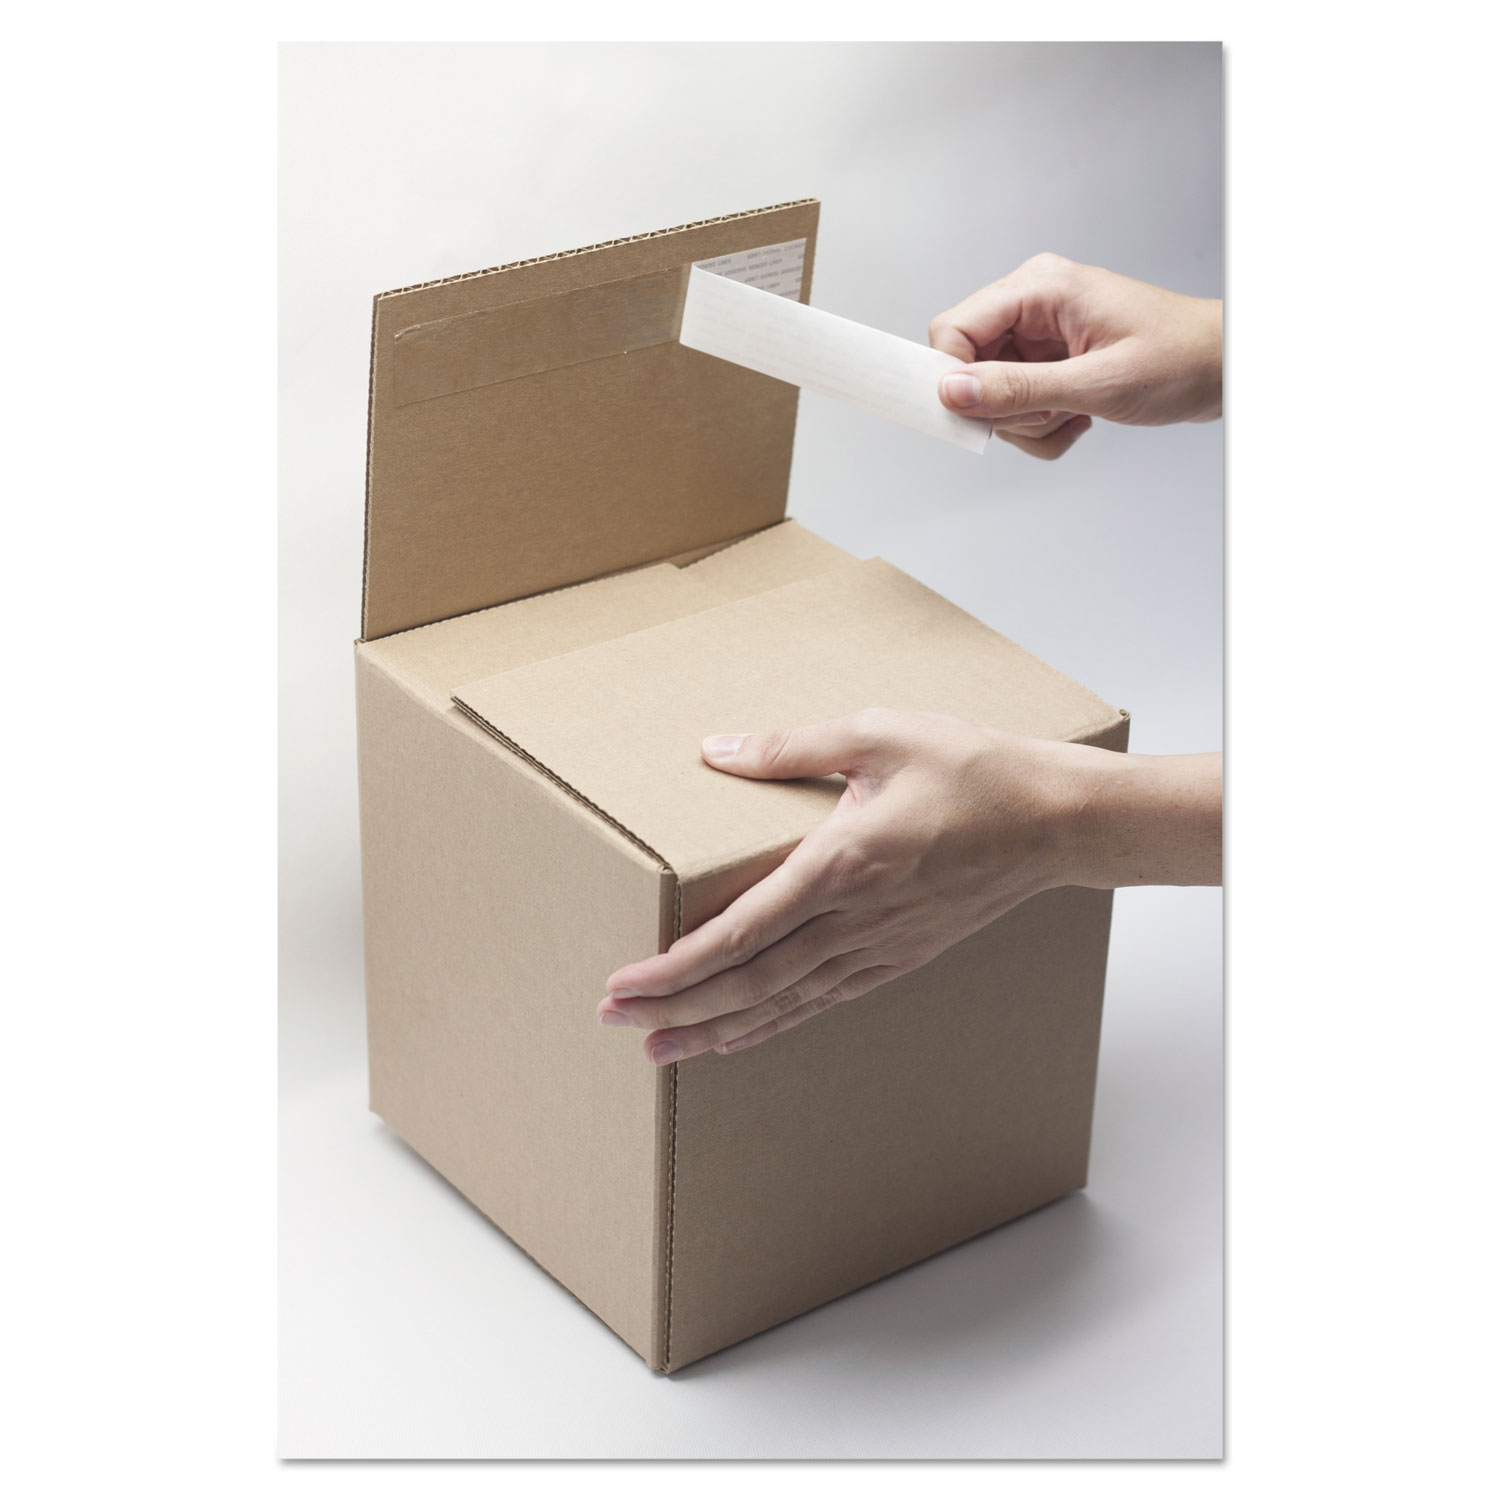 Self-Sealing Shipping Boxes, 6l x 6w x 4h, Brown Kraft, 8/Carton